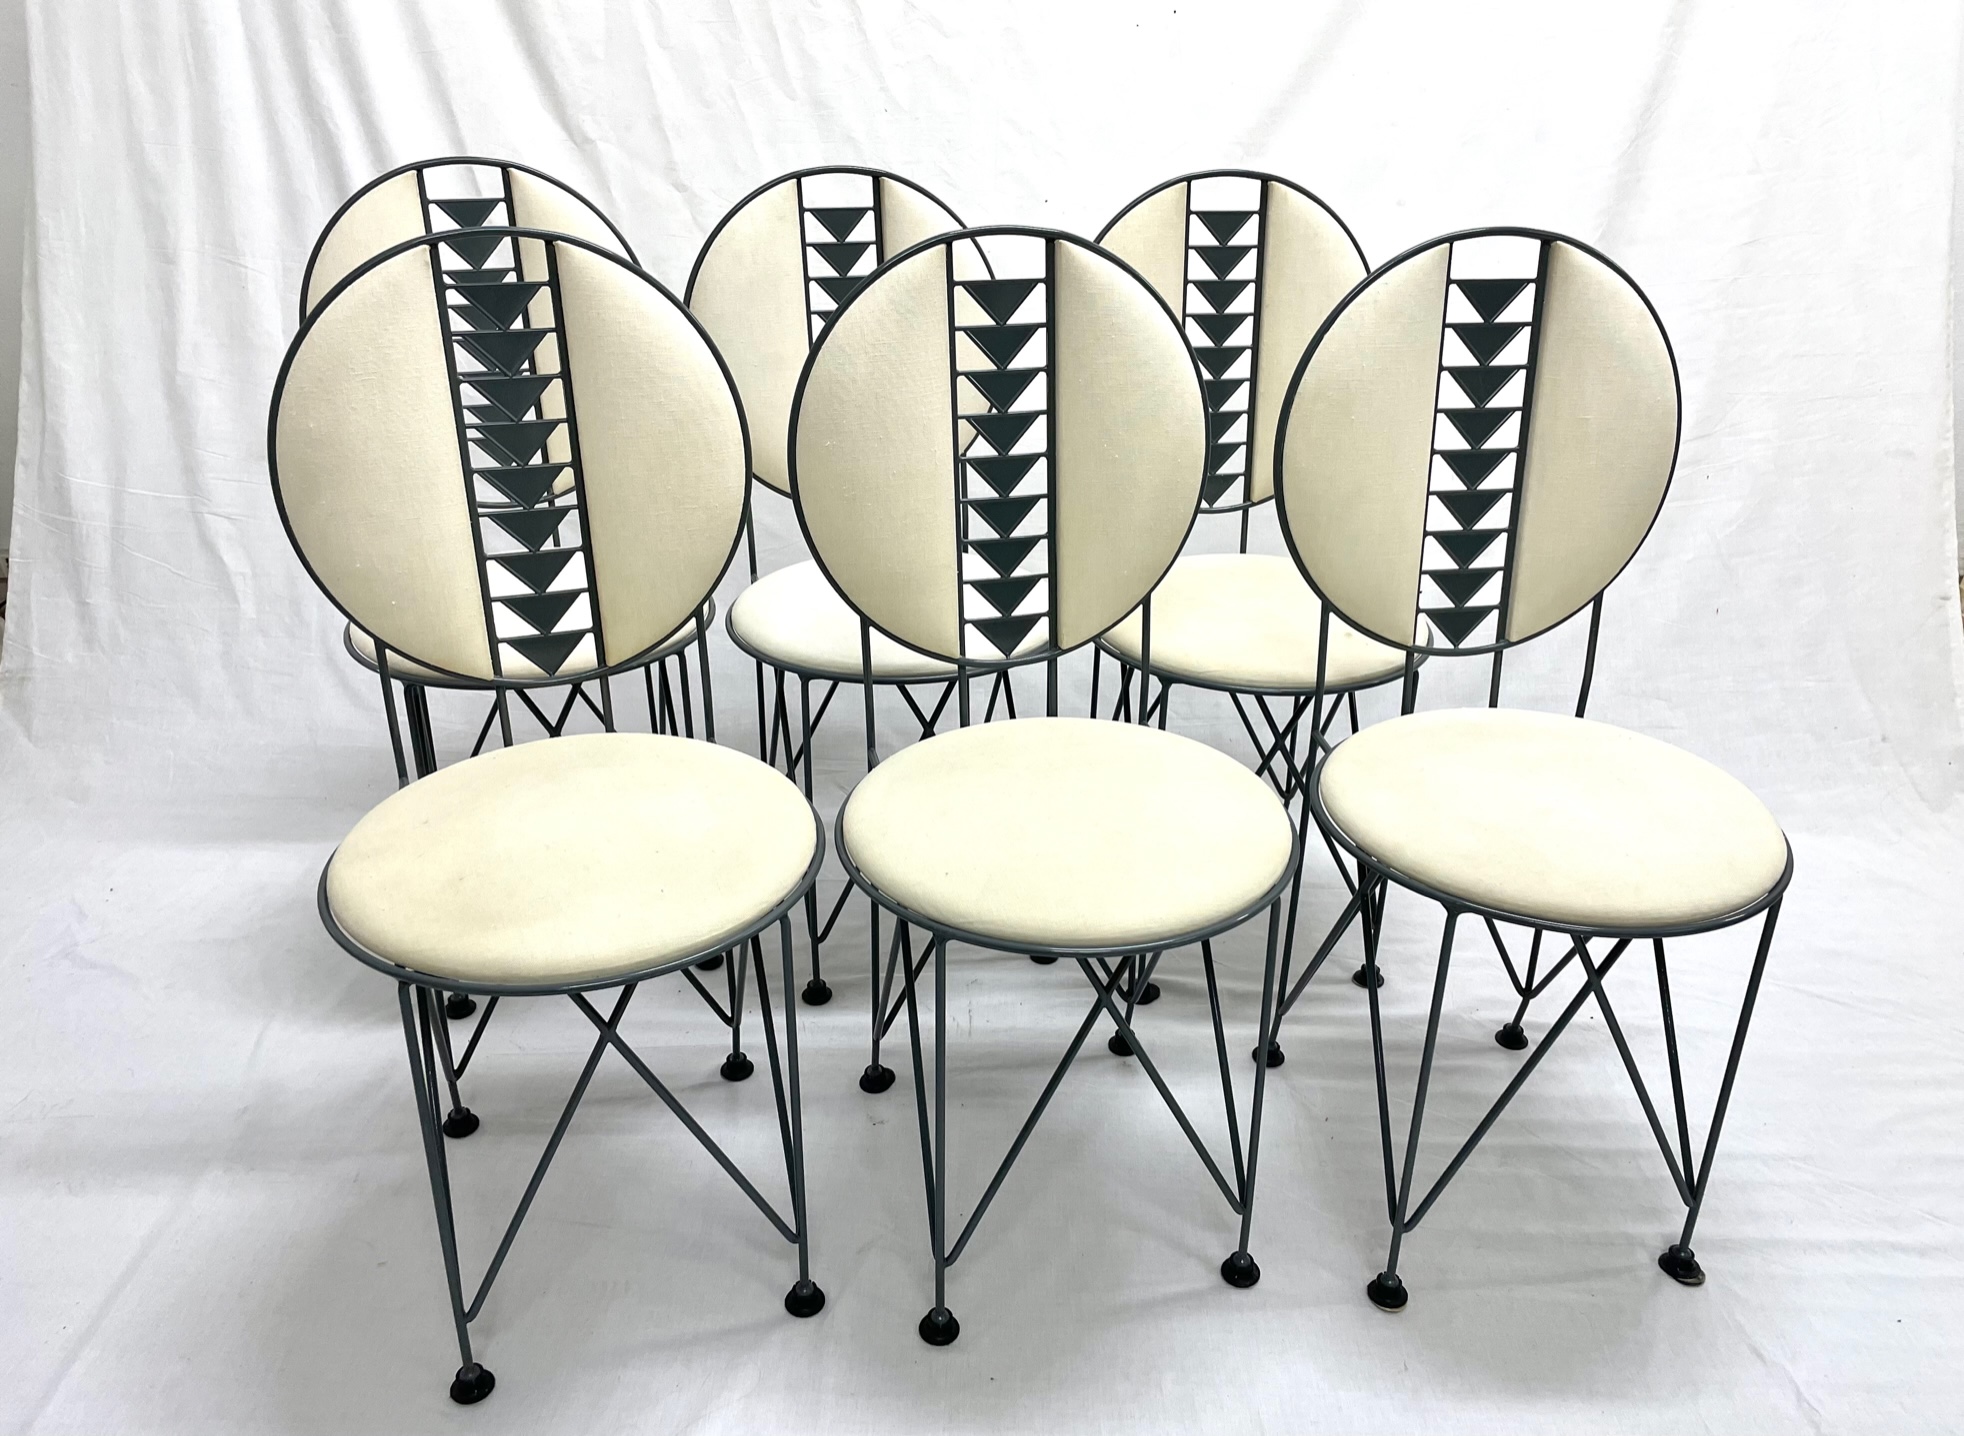 Gruppo di 6 sedie modello Midway 2, da esterno, telaio in metallo laccato grigio, imbottitura schienale in legno, cuscino imbottito, rivestimenti in tessuto bianco